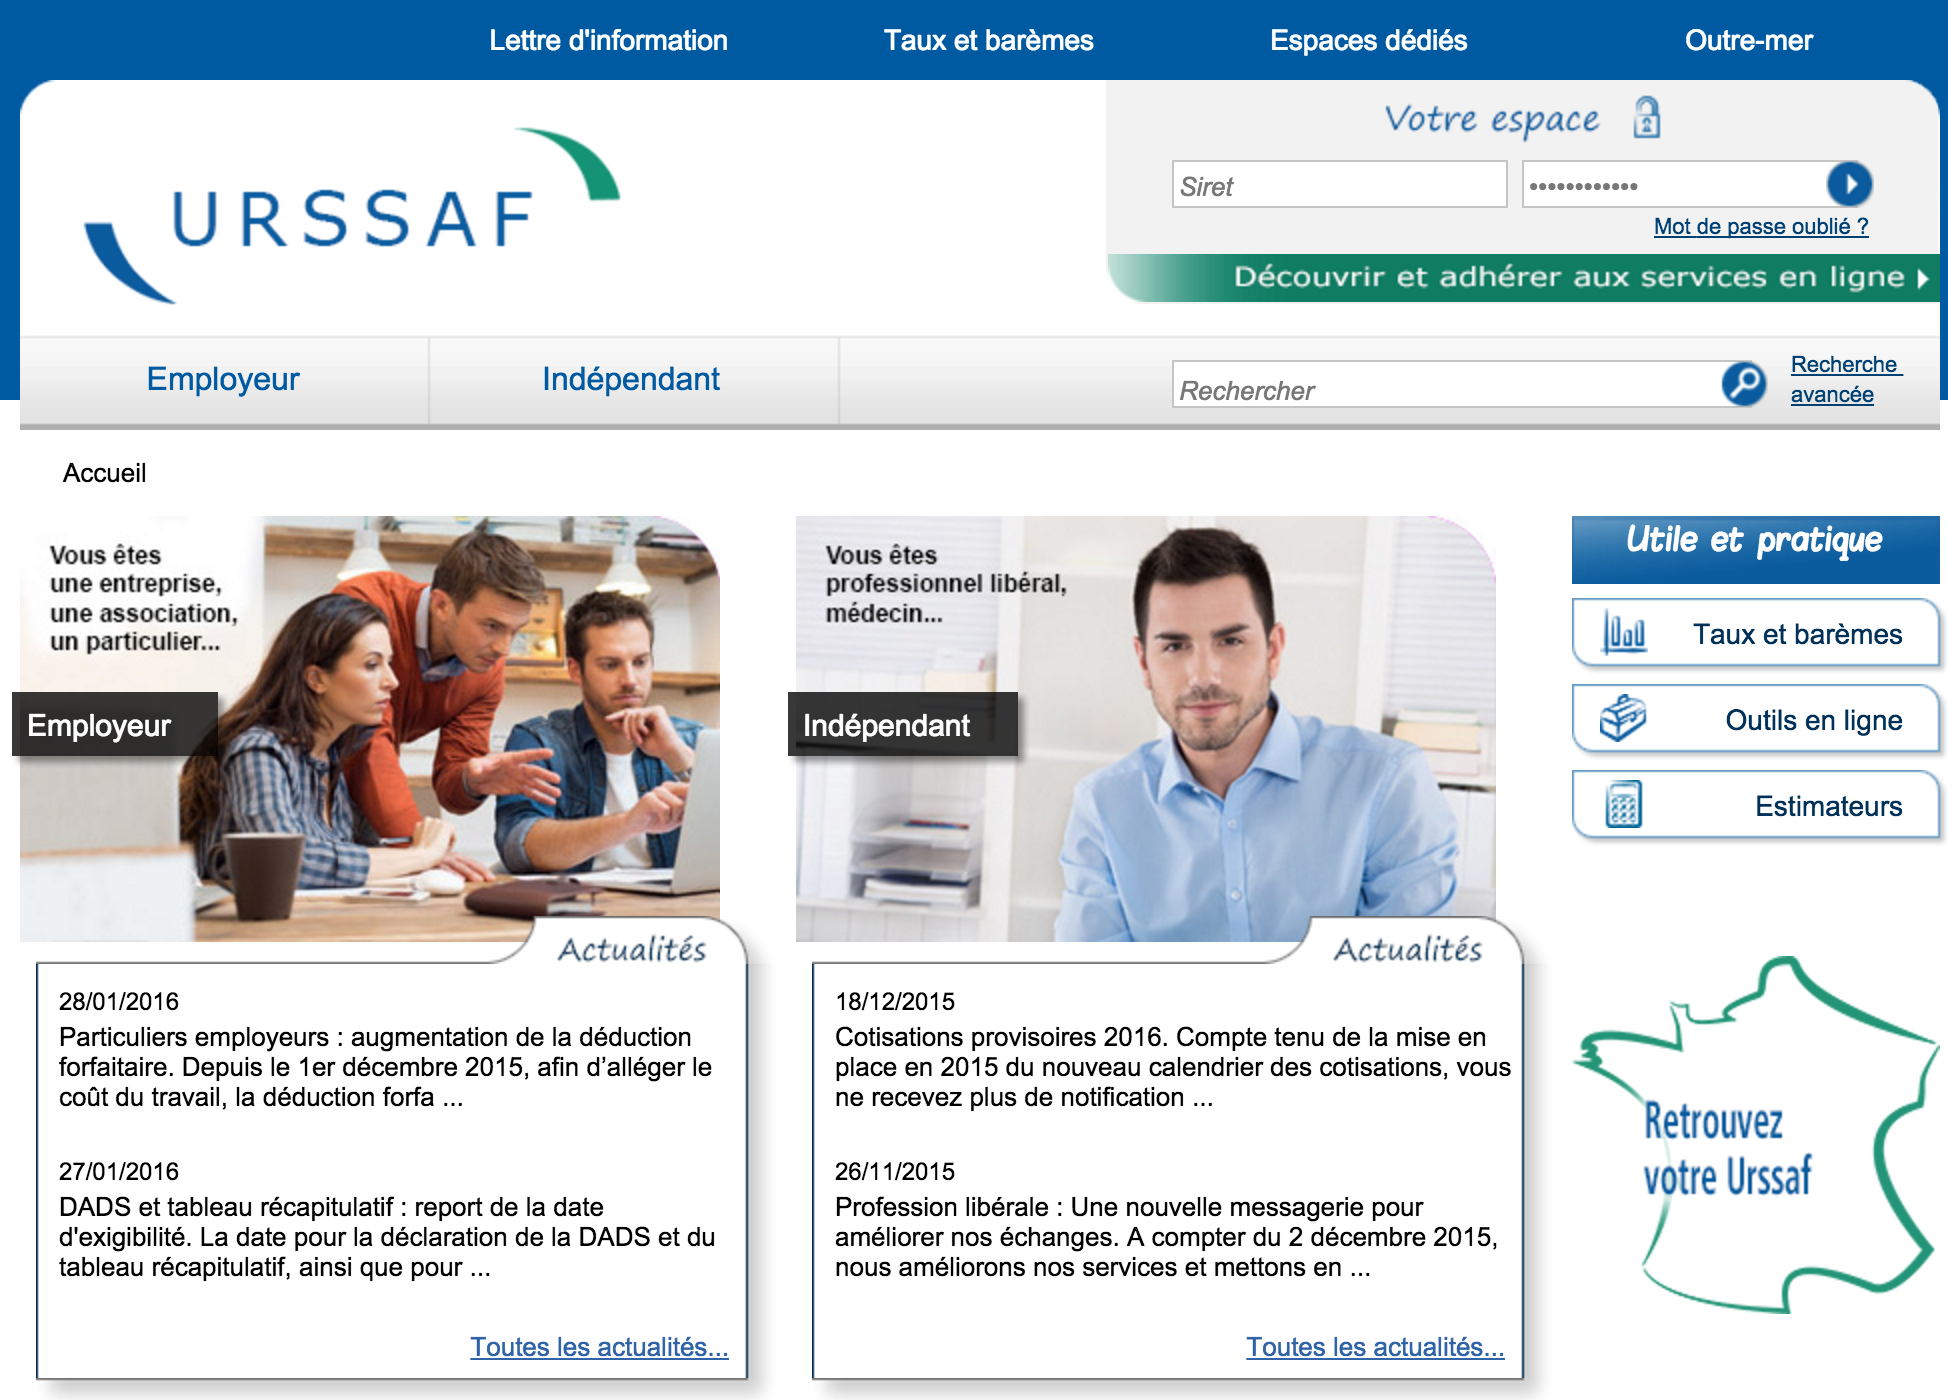 Interface du site officiel de l'Urssaf